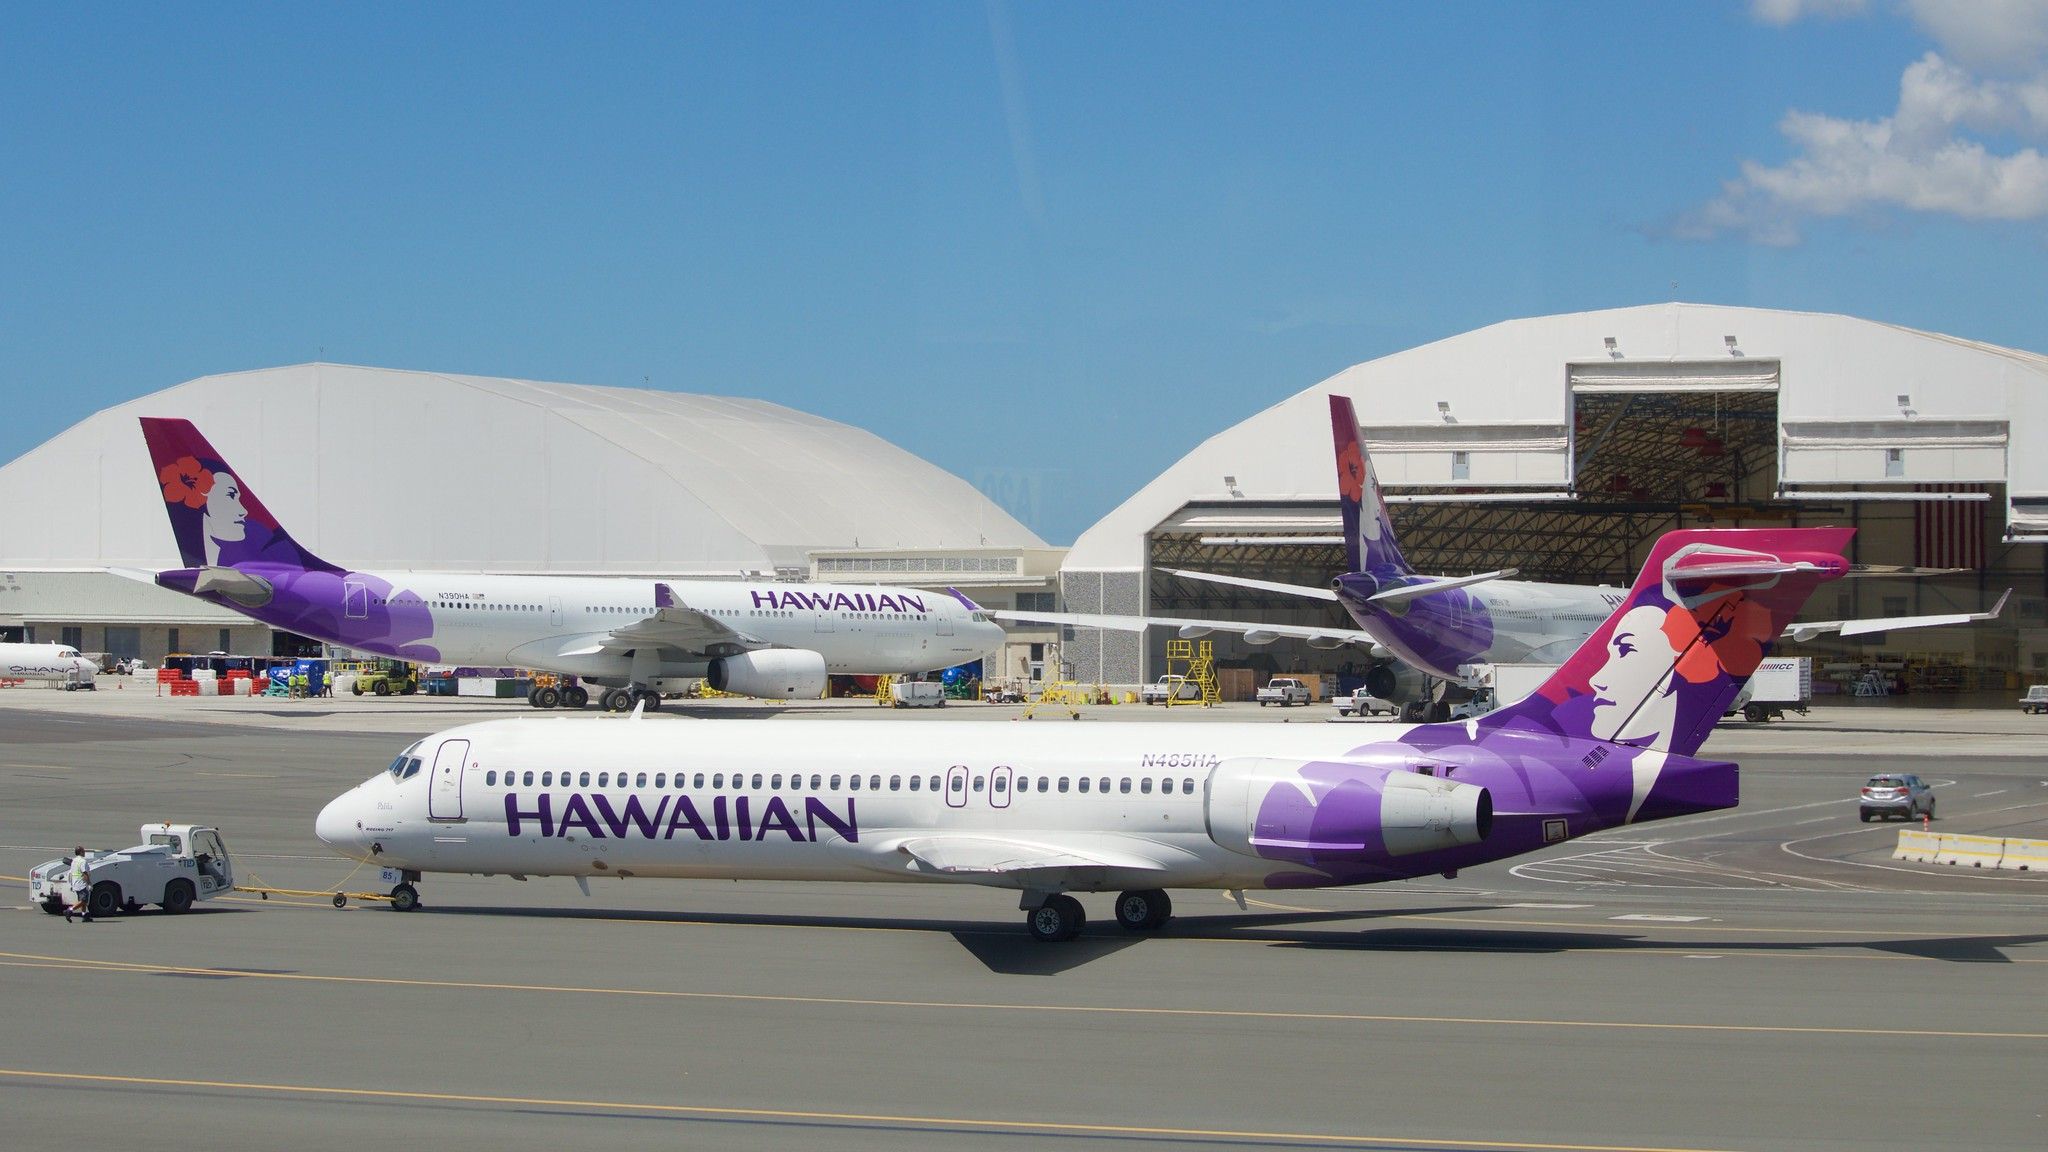 Hawaiian Airlines Boeing 717 MD-95 DC-9 N485HA A330 -200 N390HA, etc. background Honolulu